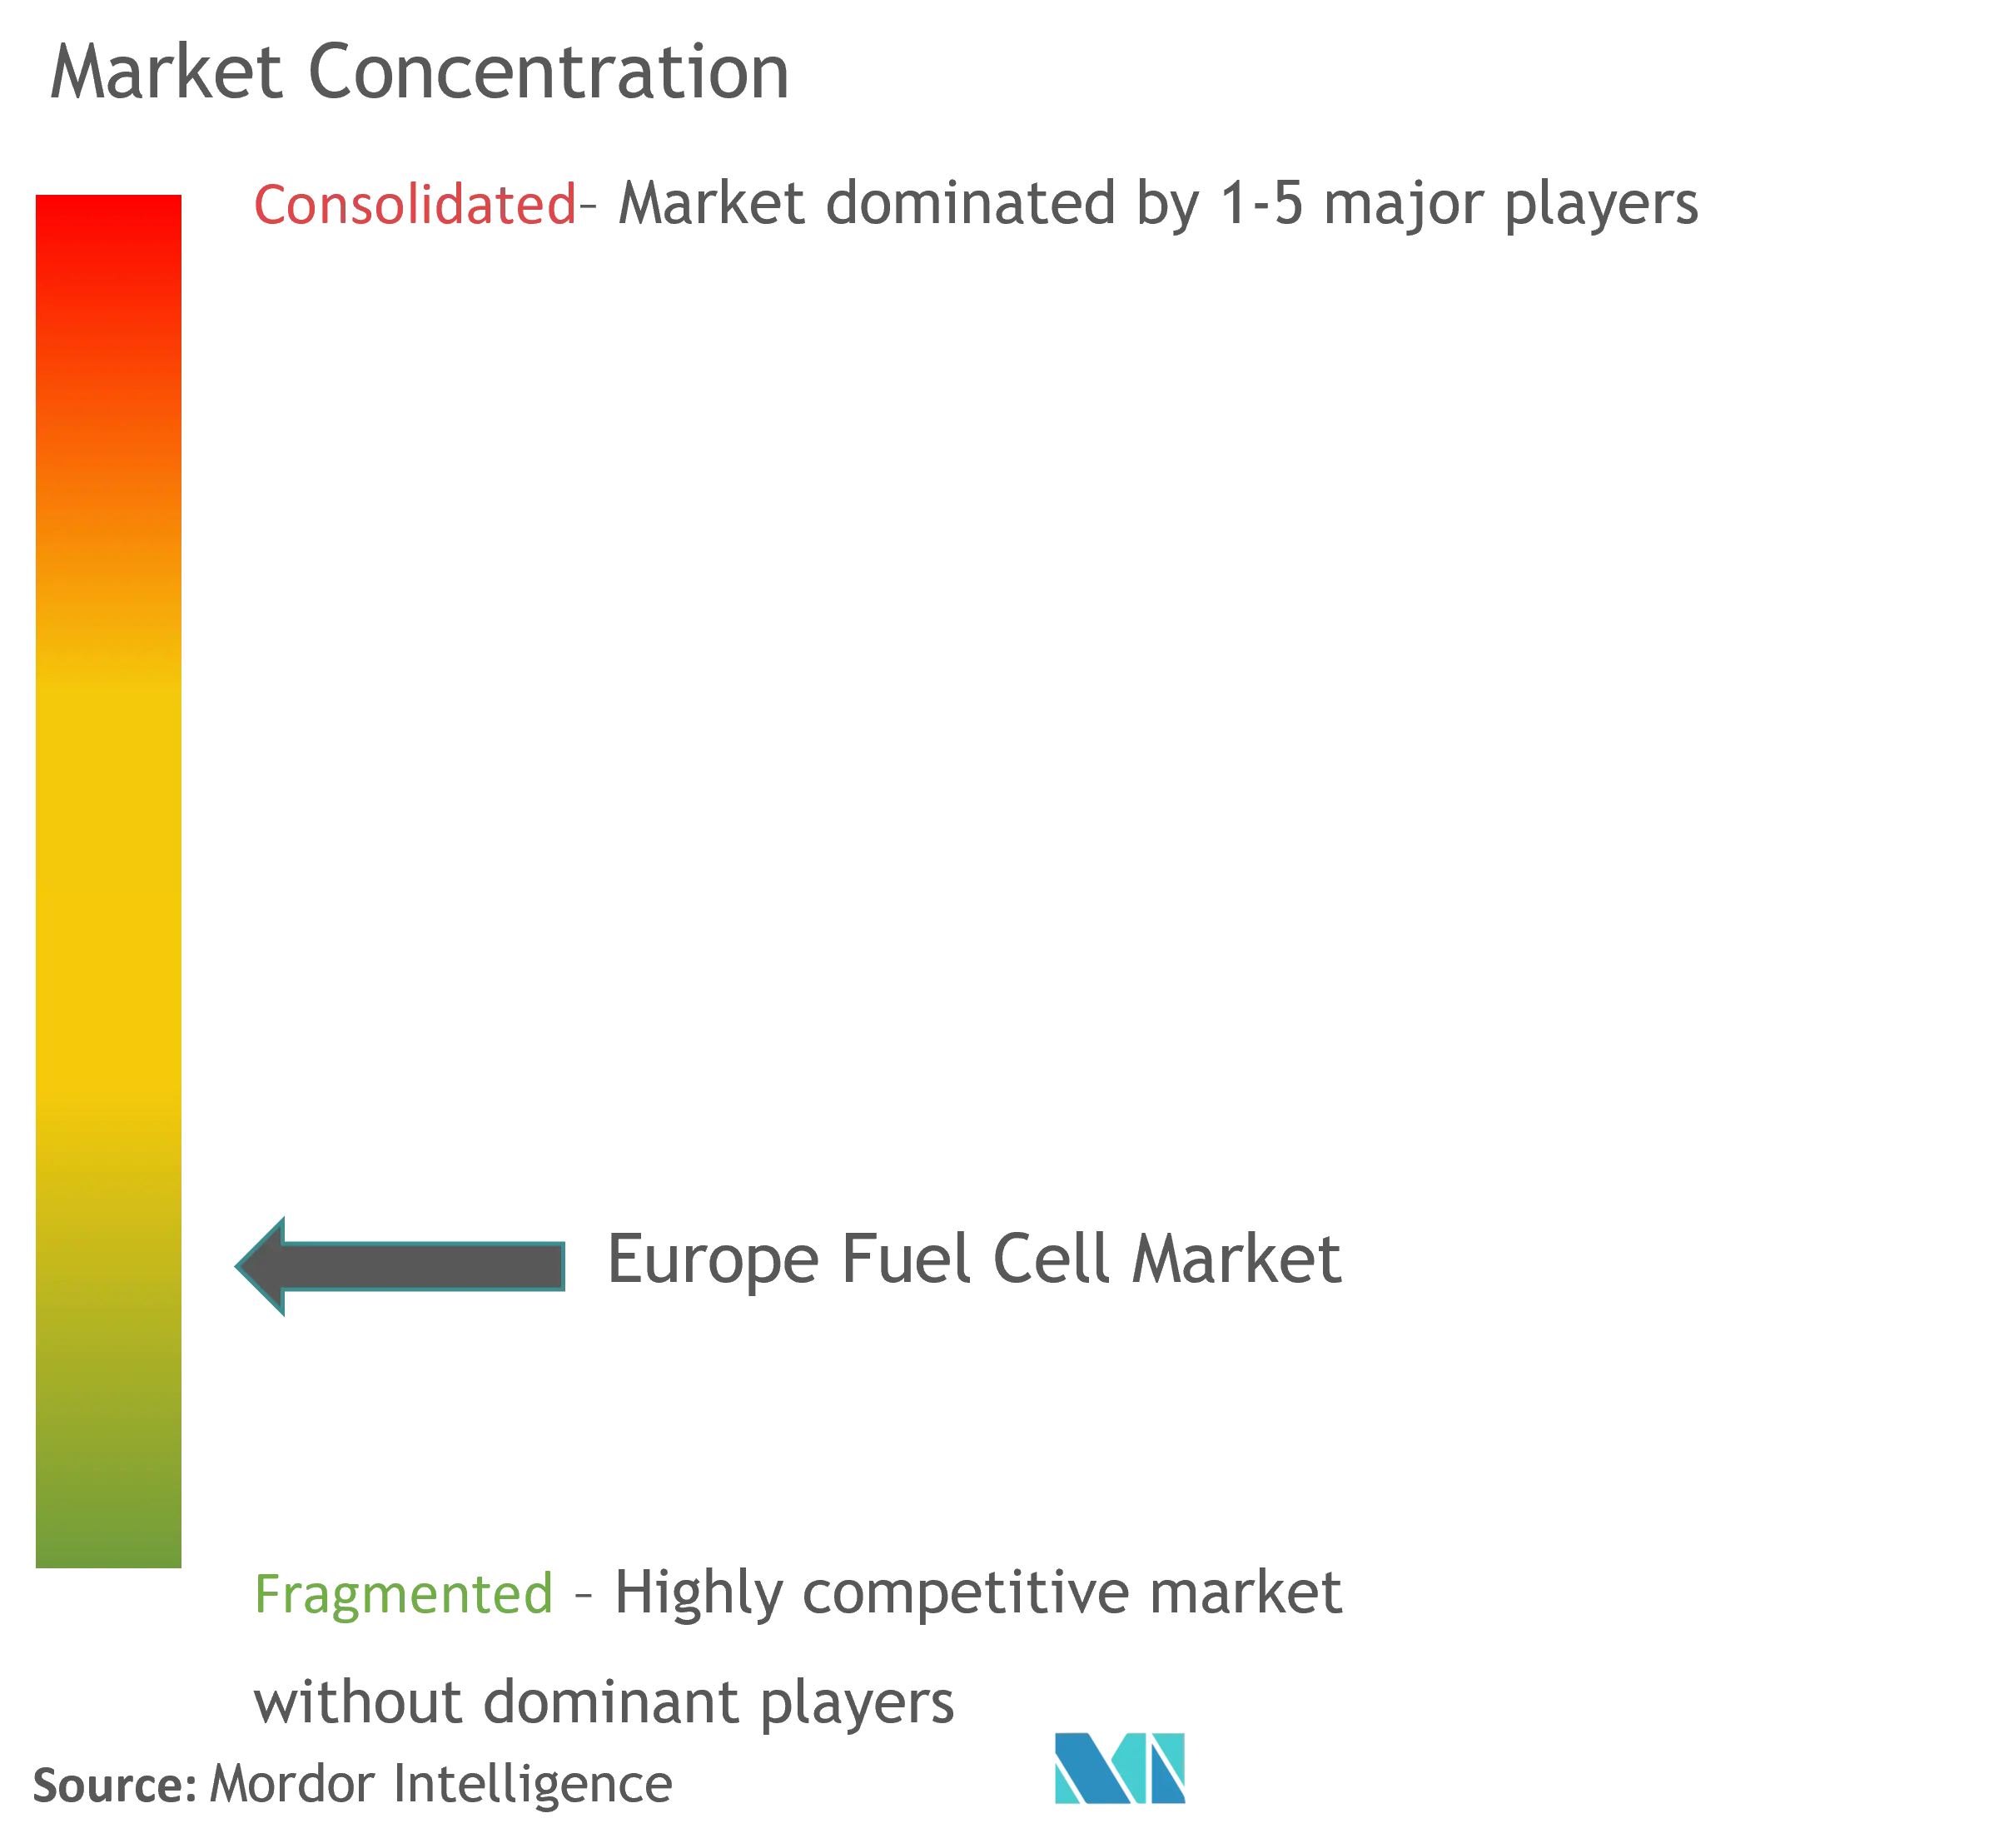 Concentração do mercado europeu de células de combustível